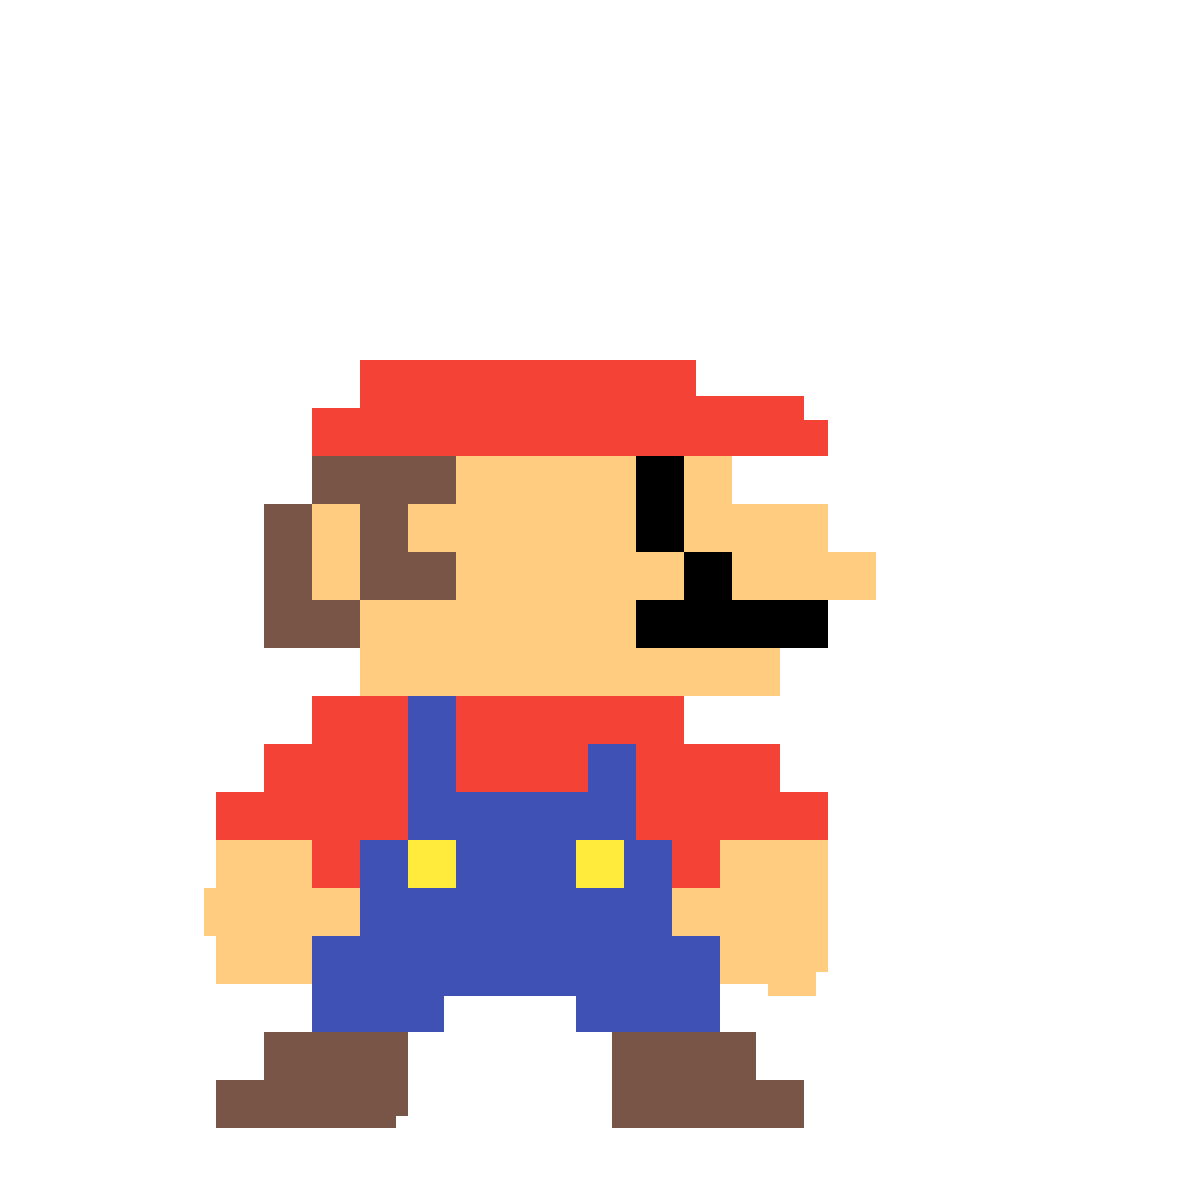 Марио пикселярт. Марио пиксельный арт. Марио персонаж игр пиксельный. Пиксельные персонажи Марио. Пиксели загрузить